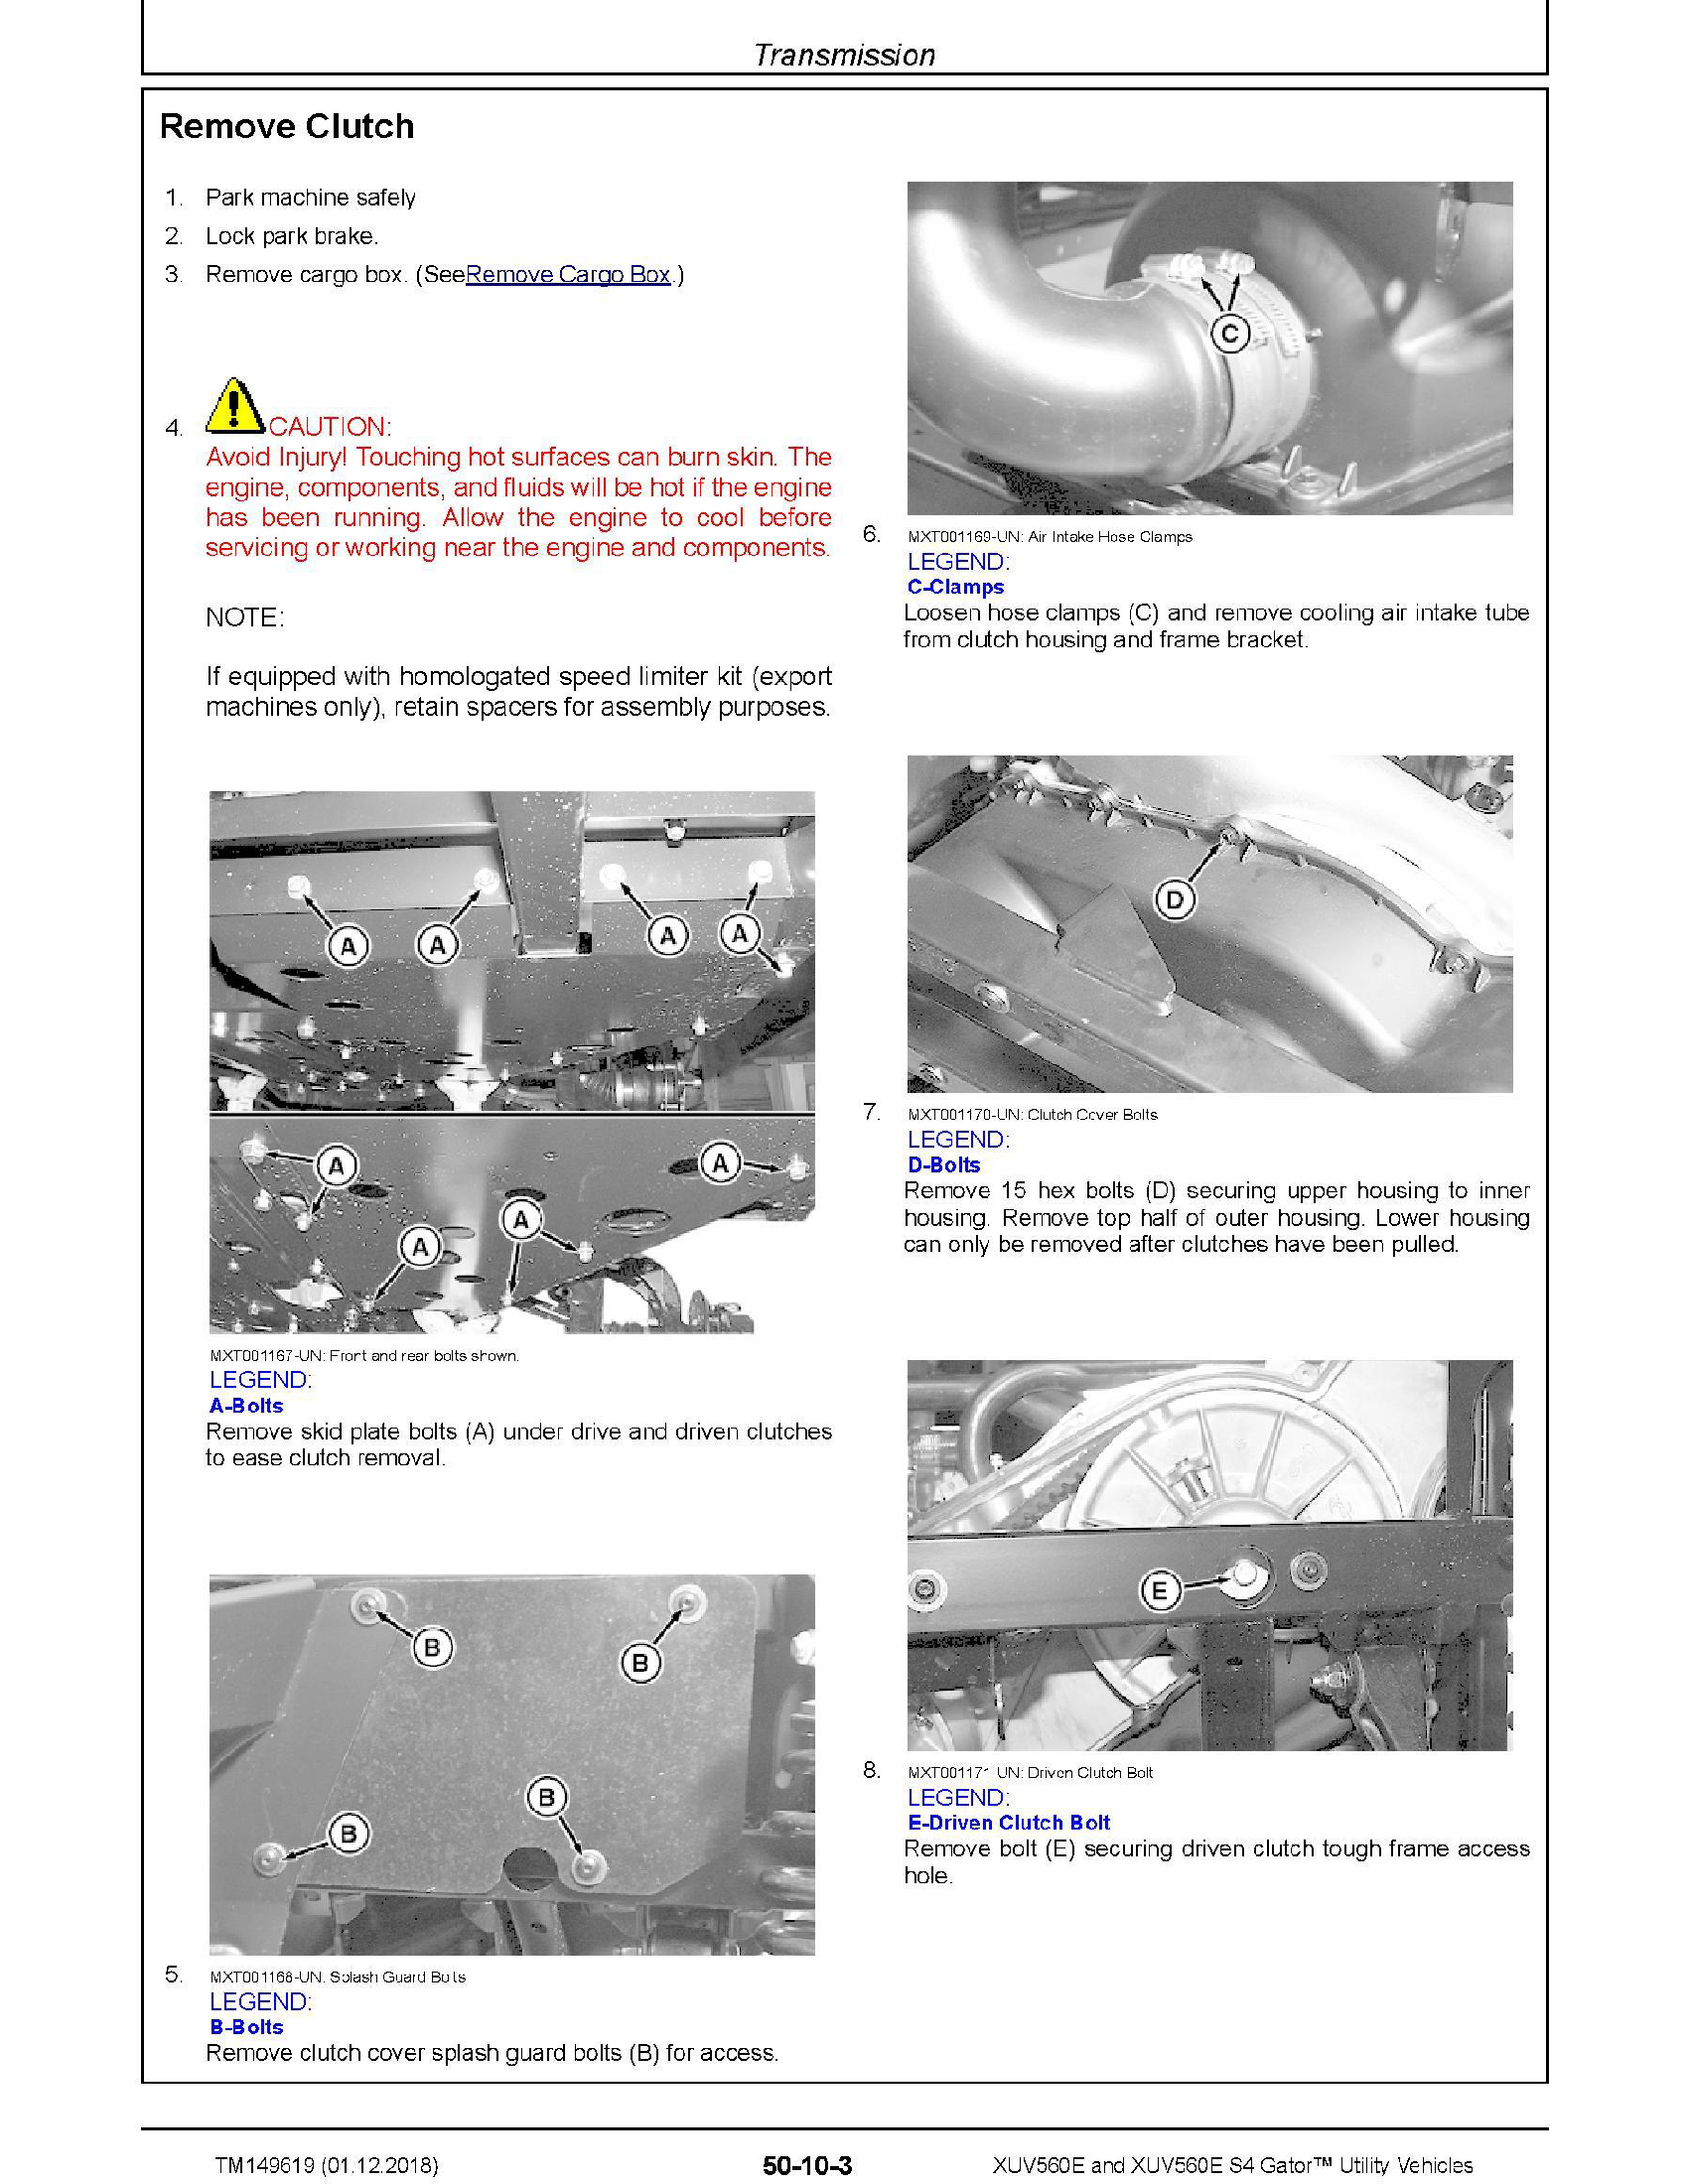 John Deere S4 manual pdf